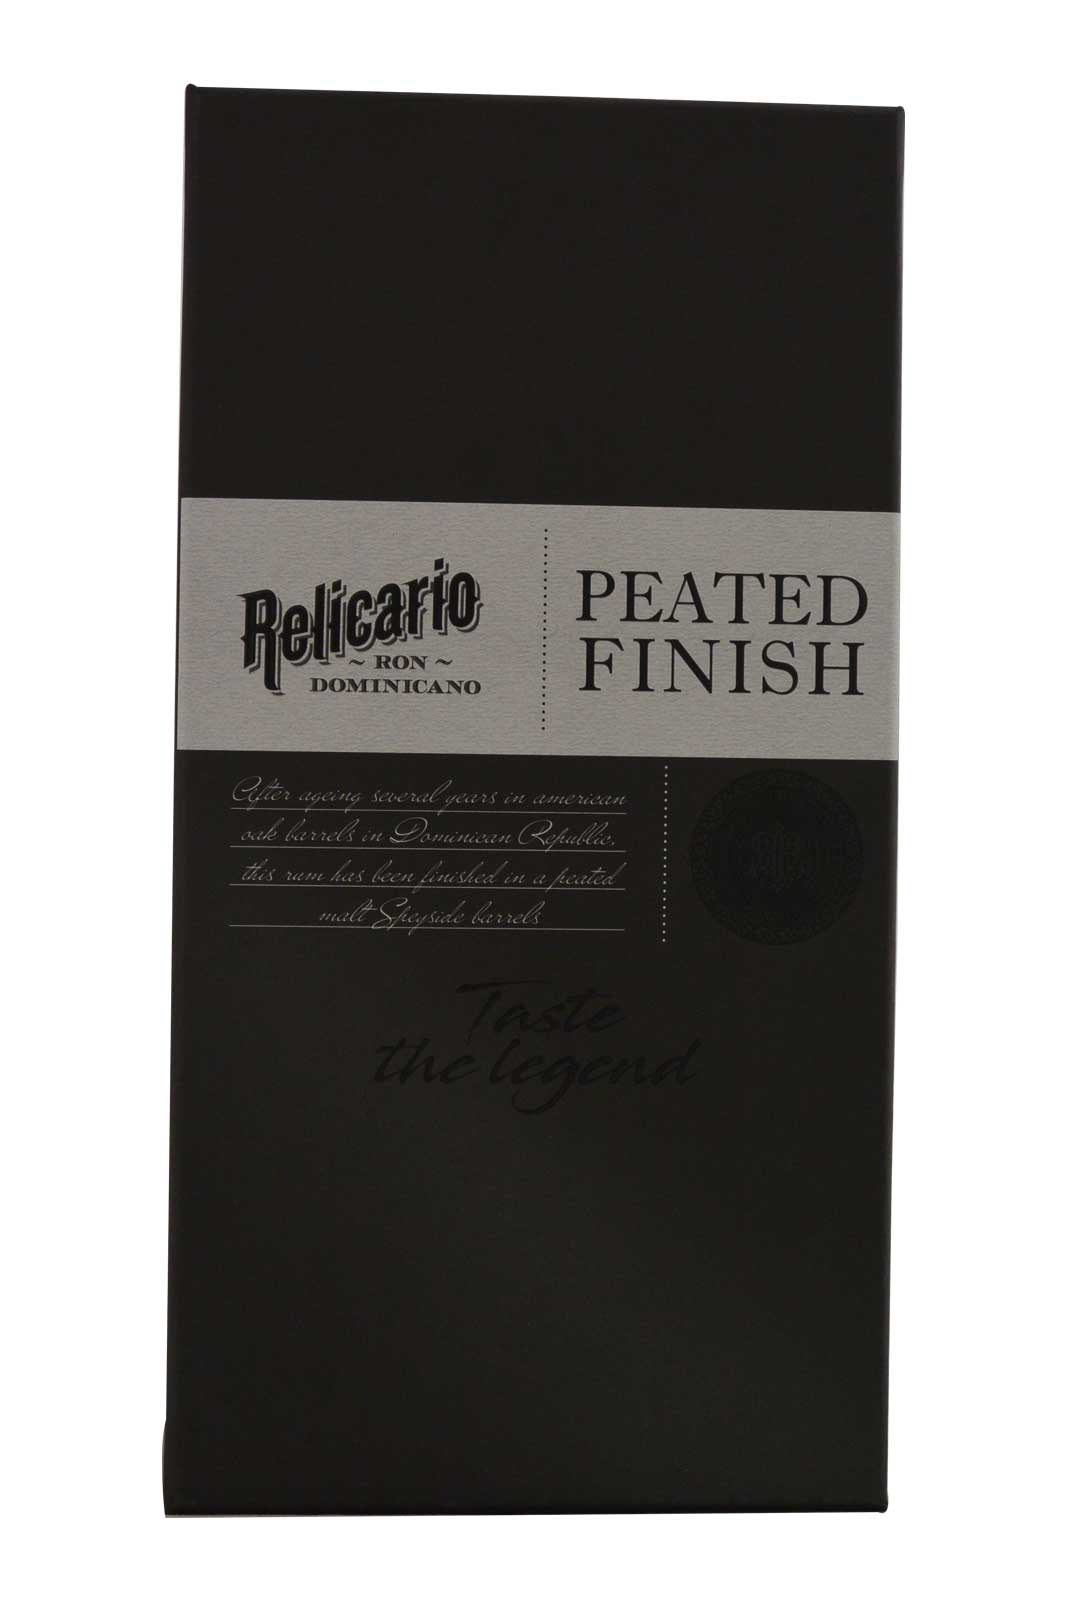 Relcario Peated Finish Rum